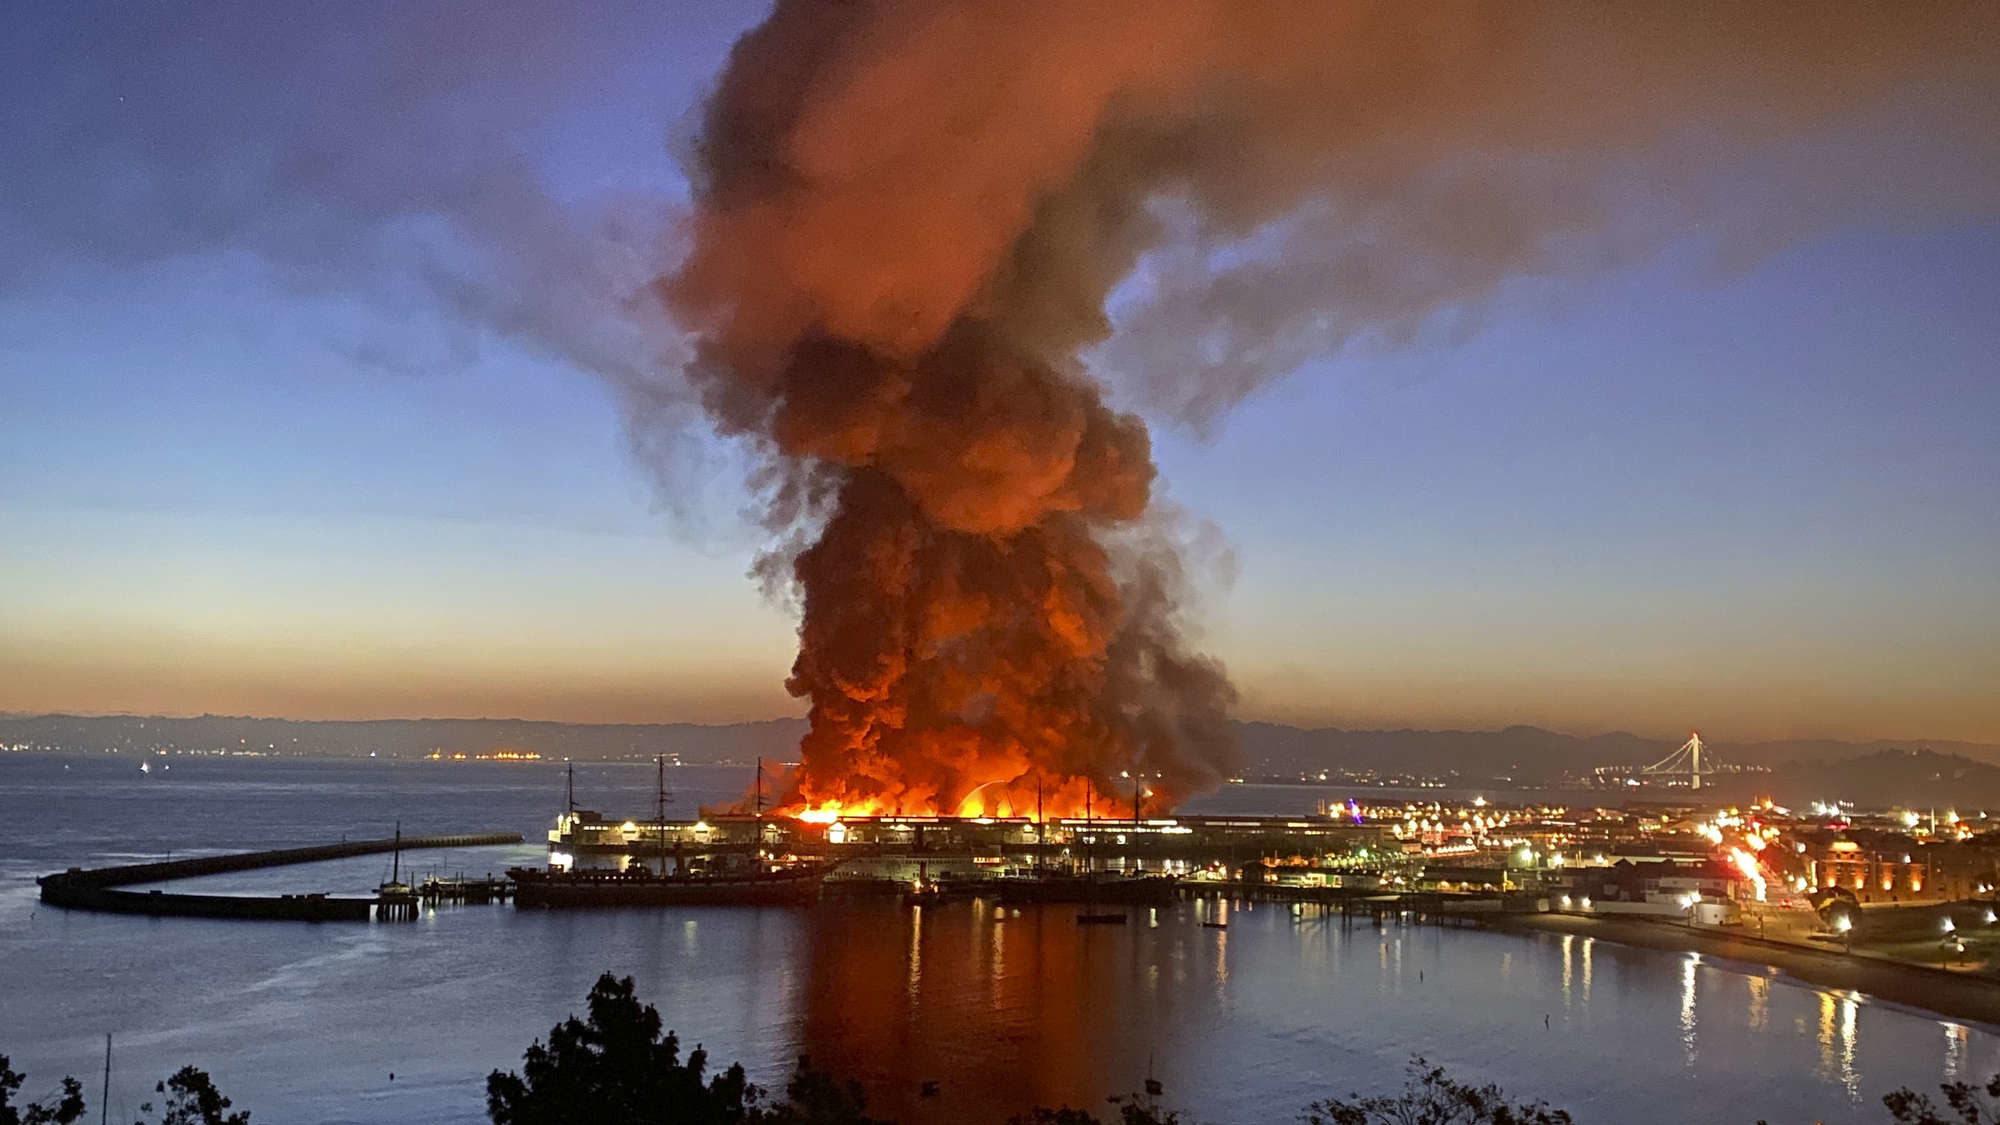 Ein historisches Lagerhaus im Hafen von San Francisco steht lichterloh in Flammen. Die Rauchsäule ist kilometerweit zu sehen. Die Flammen schiessen bis zu 30 Meter in den Himmel. Möglicherweise wurde der Brand von Obdachlosen verursacht, die im Lagerhaus auf offenem Feuer kochten. Das Pier 45 ist berühmt, weil dort das Militärfrachtschiff Jeremiah O’Brian aus dem Zweiten Weltkrieg liegt. Das Schiff blieb unbeschädigt. 
(Foto: AP/Dan Whaley)